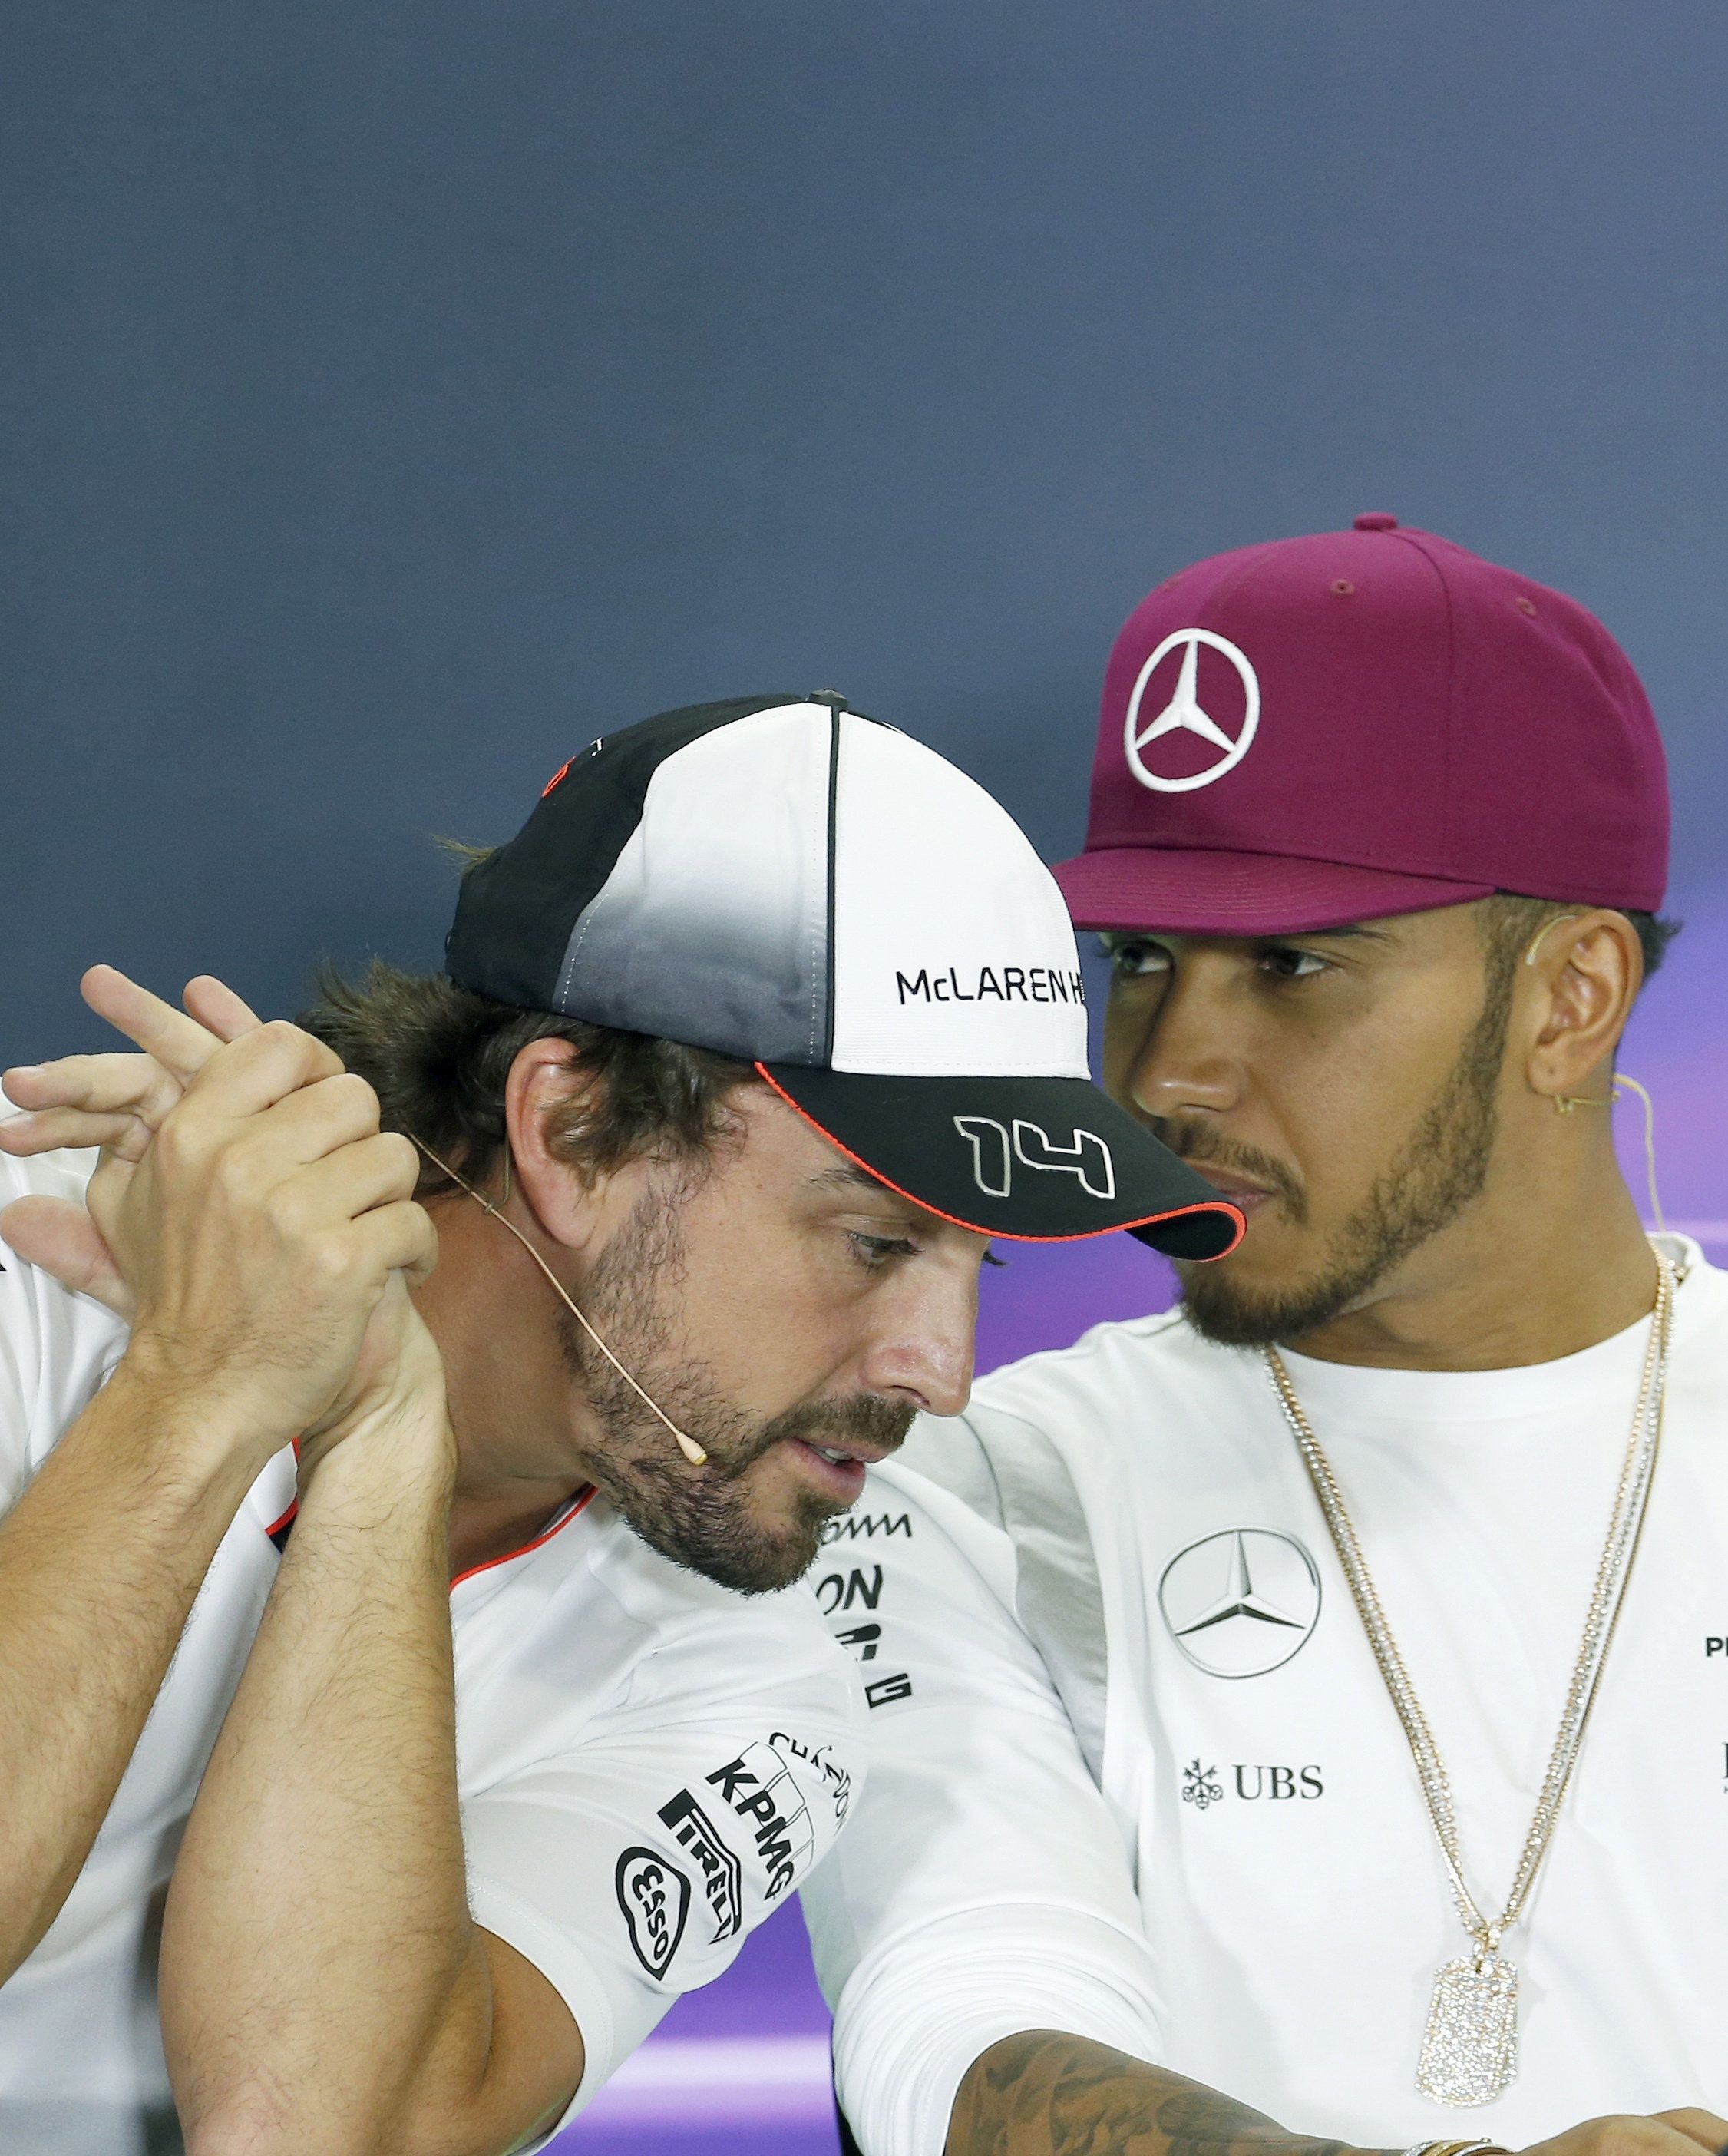 Pole per a Hamilton i Alonso millora